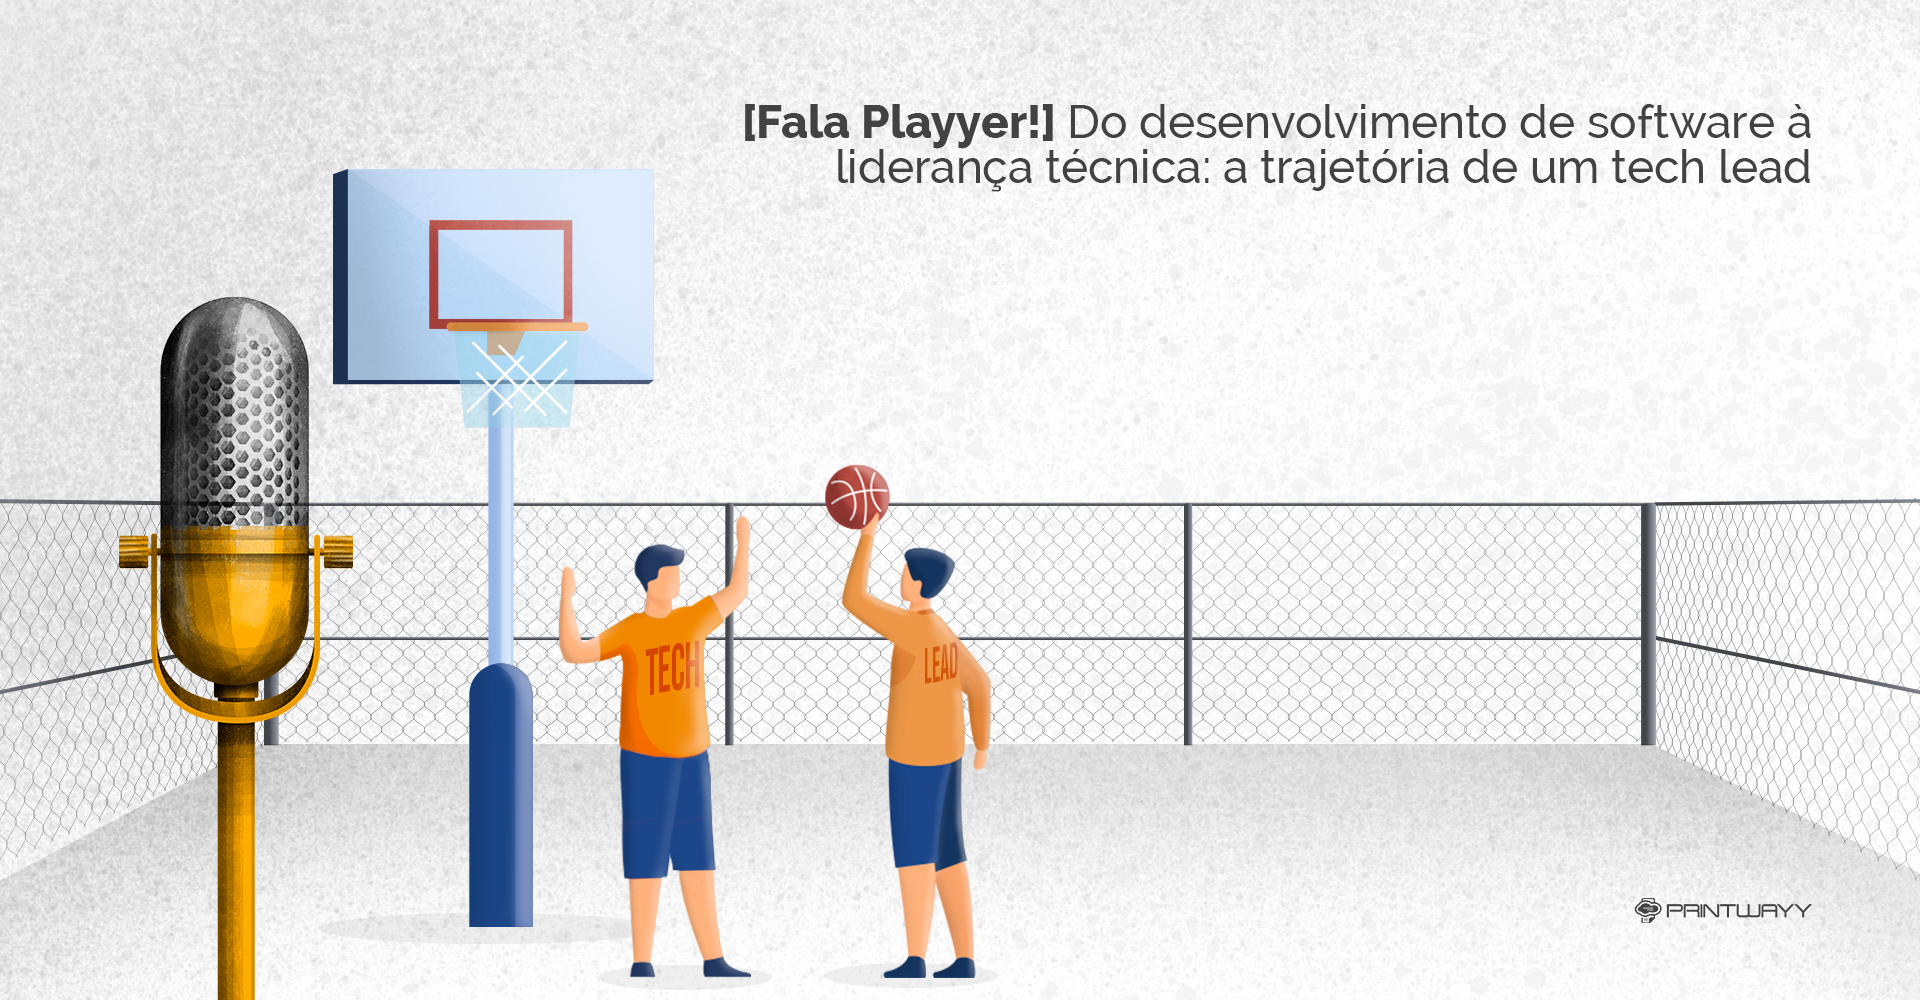 Duas pessoas jogando basquete em uma quadra. Retratando o trabalho em equipe e a liderança de um tech lead.